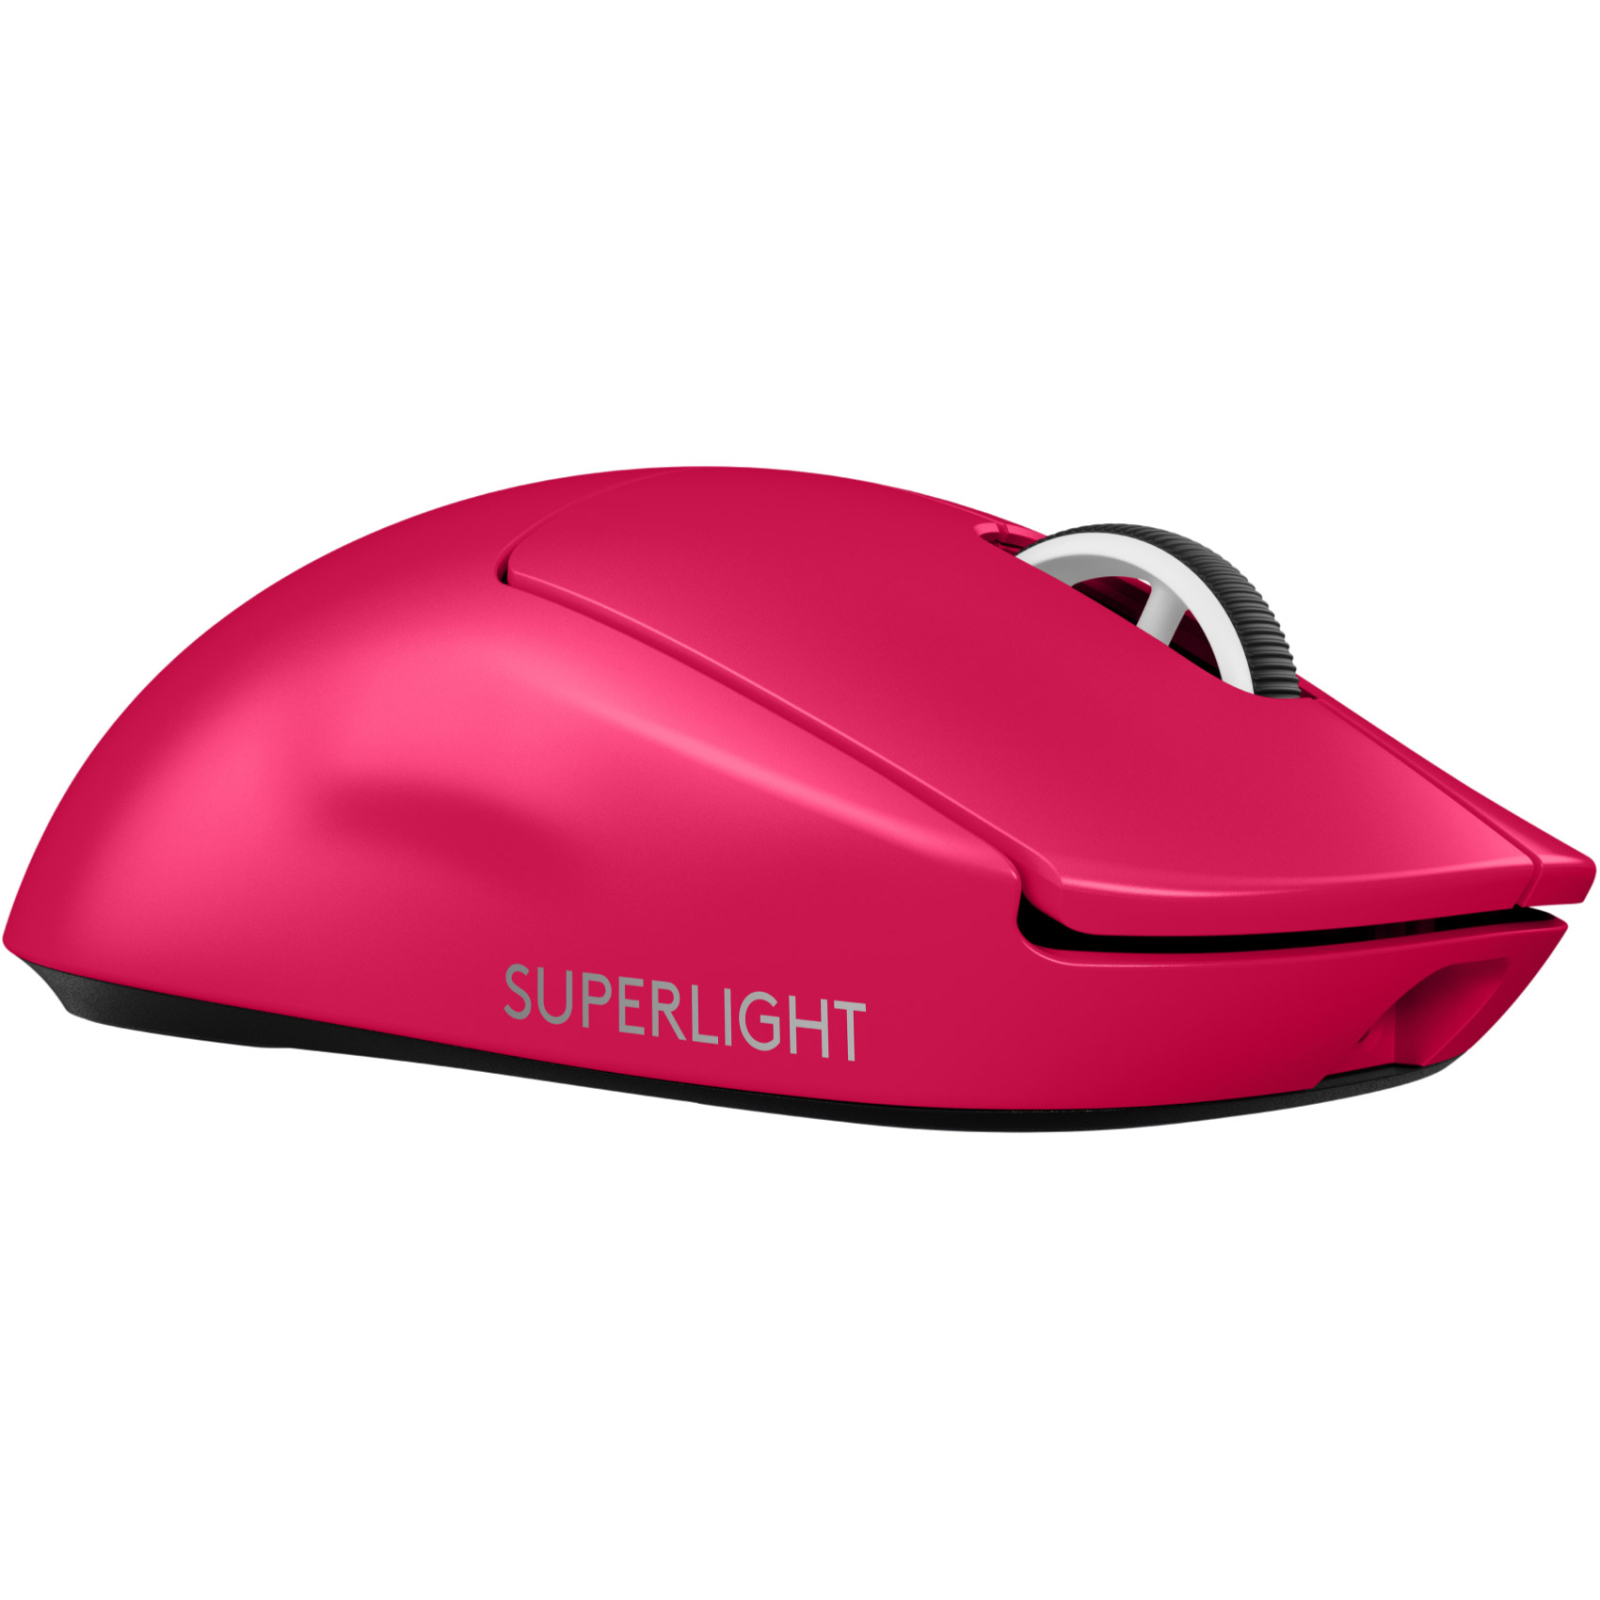 Мышка Logitech G Pro X Superlight 2 Lightspeed Wireless White (910-006638) изображение 5